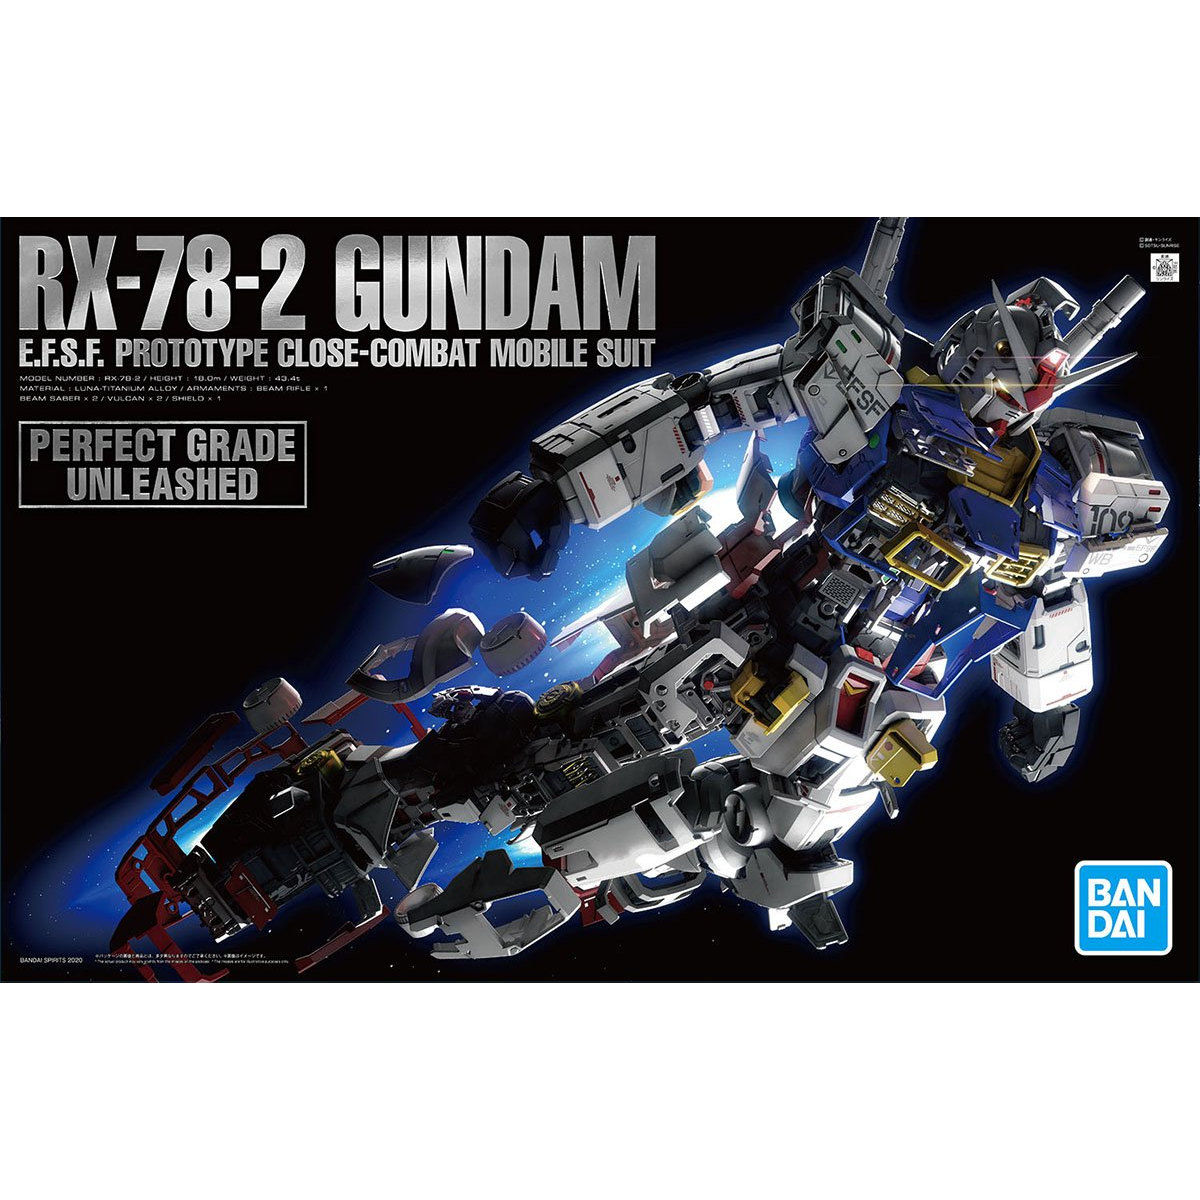 PG 1/60 Unleashed RX-78-2 Gundam - Gunpla San